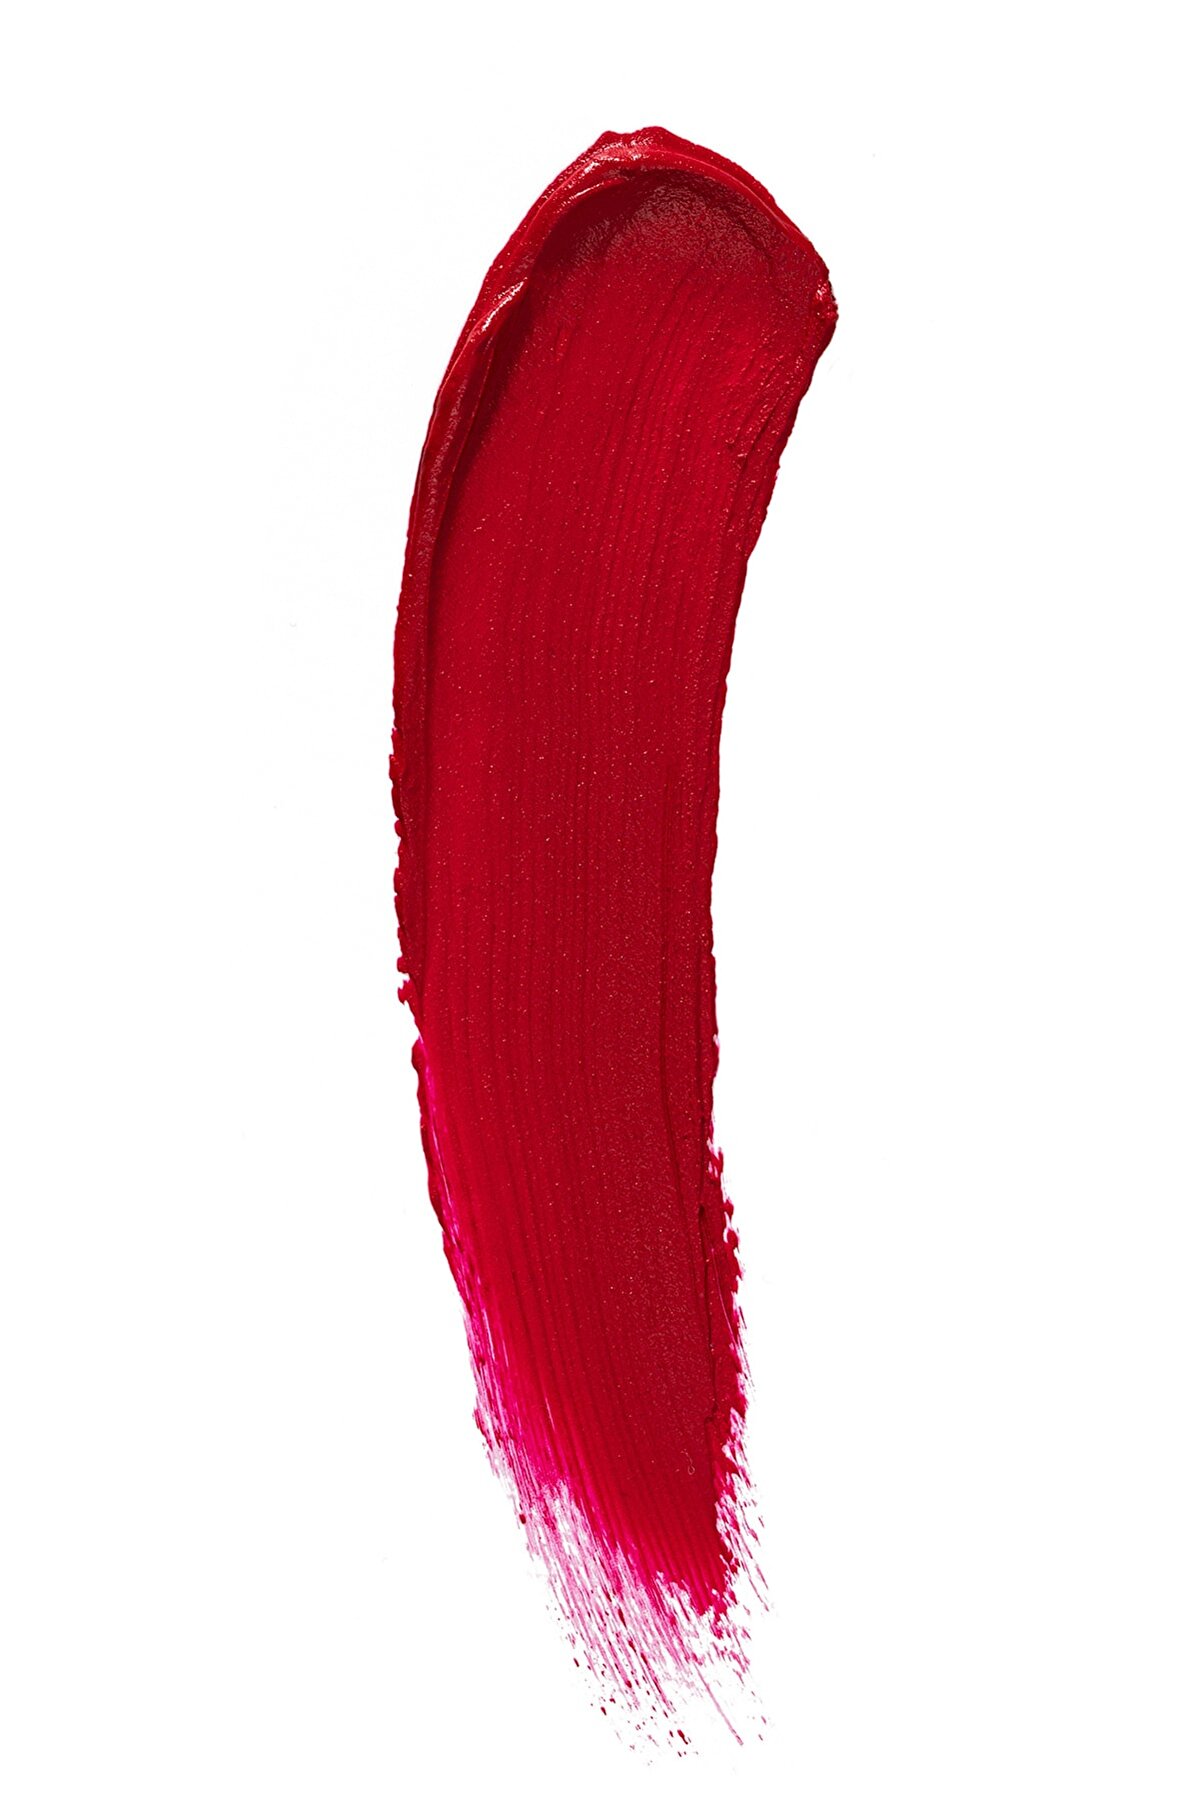 رژ لب مایع مات ابریشمی مدل Silk Matte رنگ قرمز Claret Red شماره ۷ فلورمار Flormar شیکولات